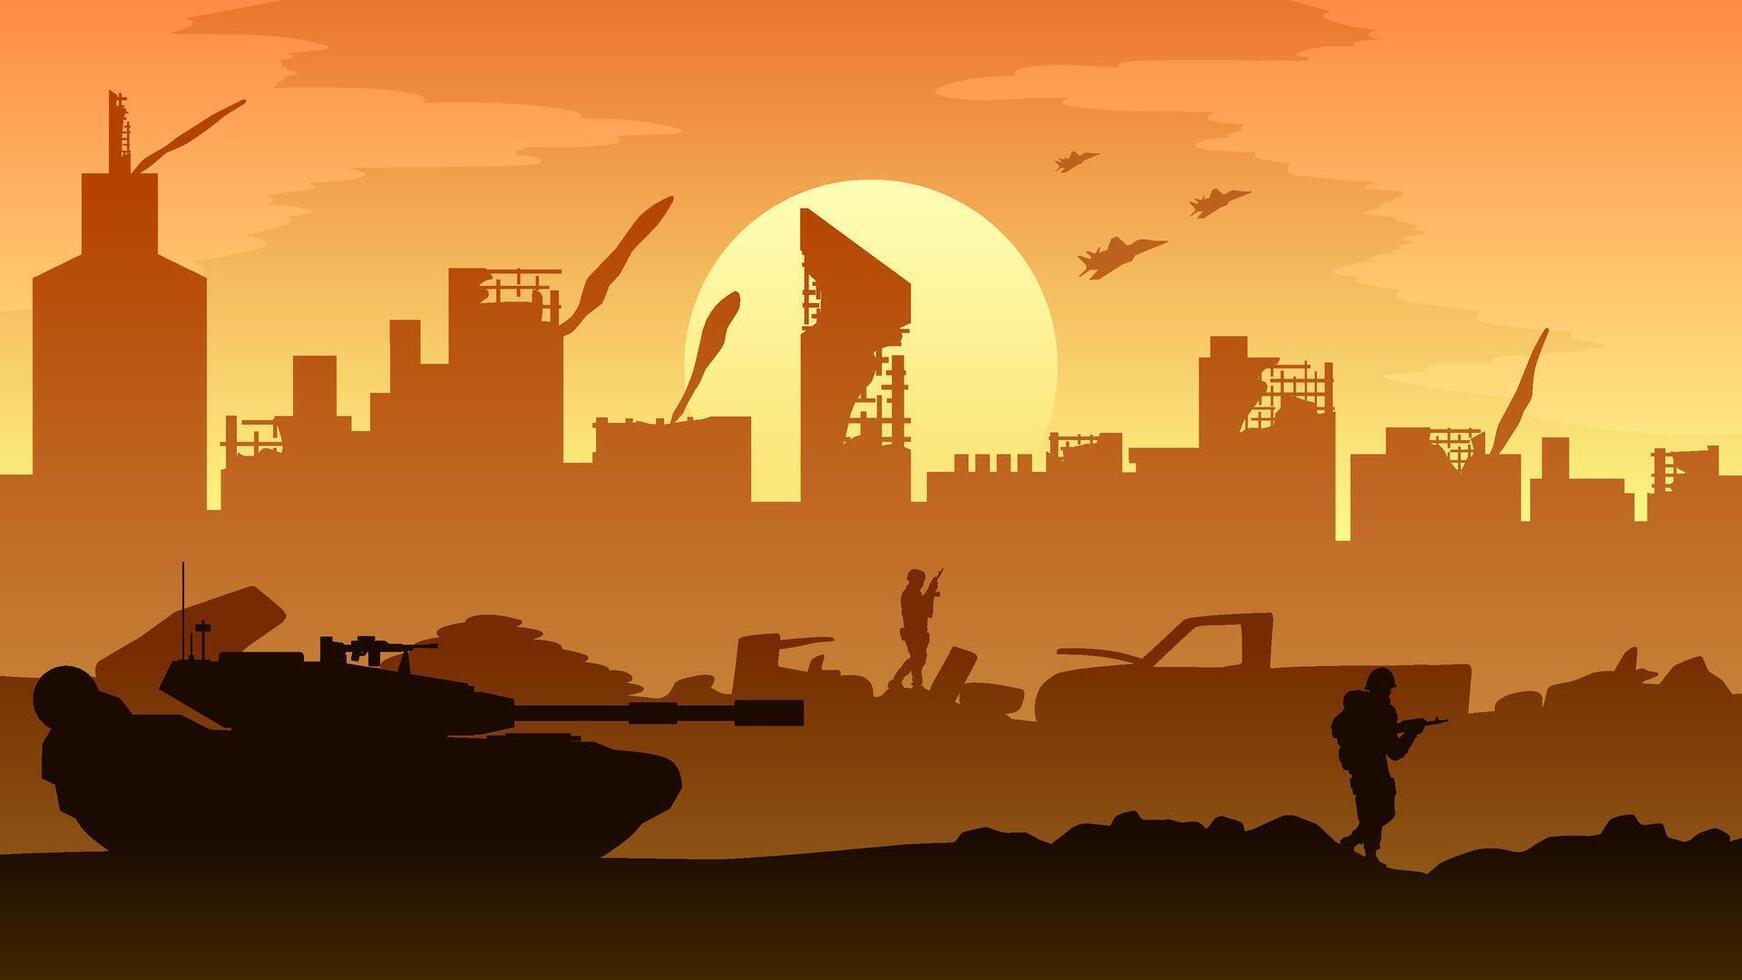 Destroyed city landscape vector illustration. Illustration of military tank and soldier in war conflict. Battlefield landscape for illustration, background or wallpaper